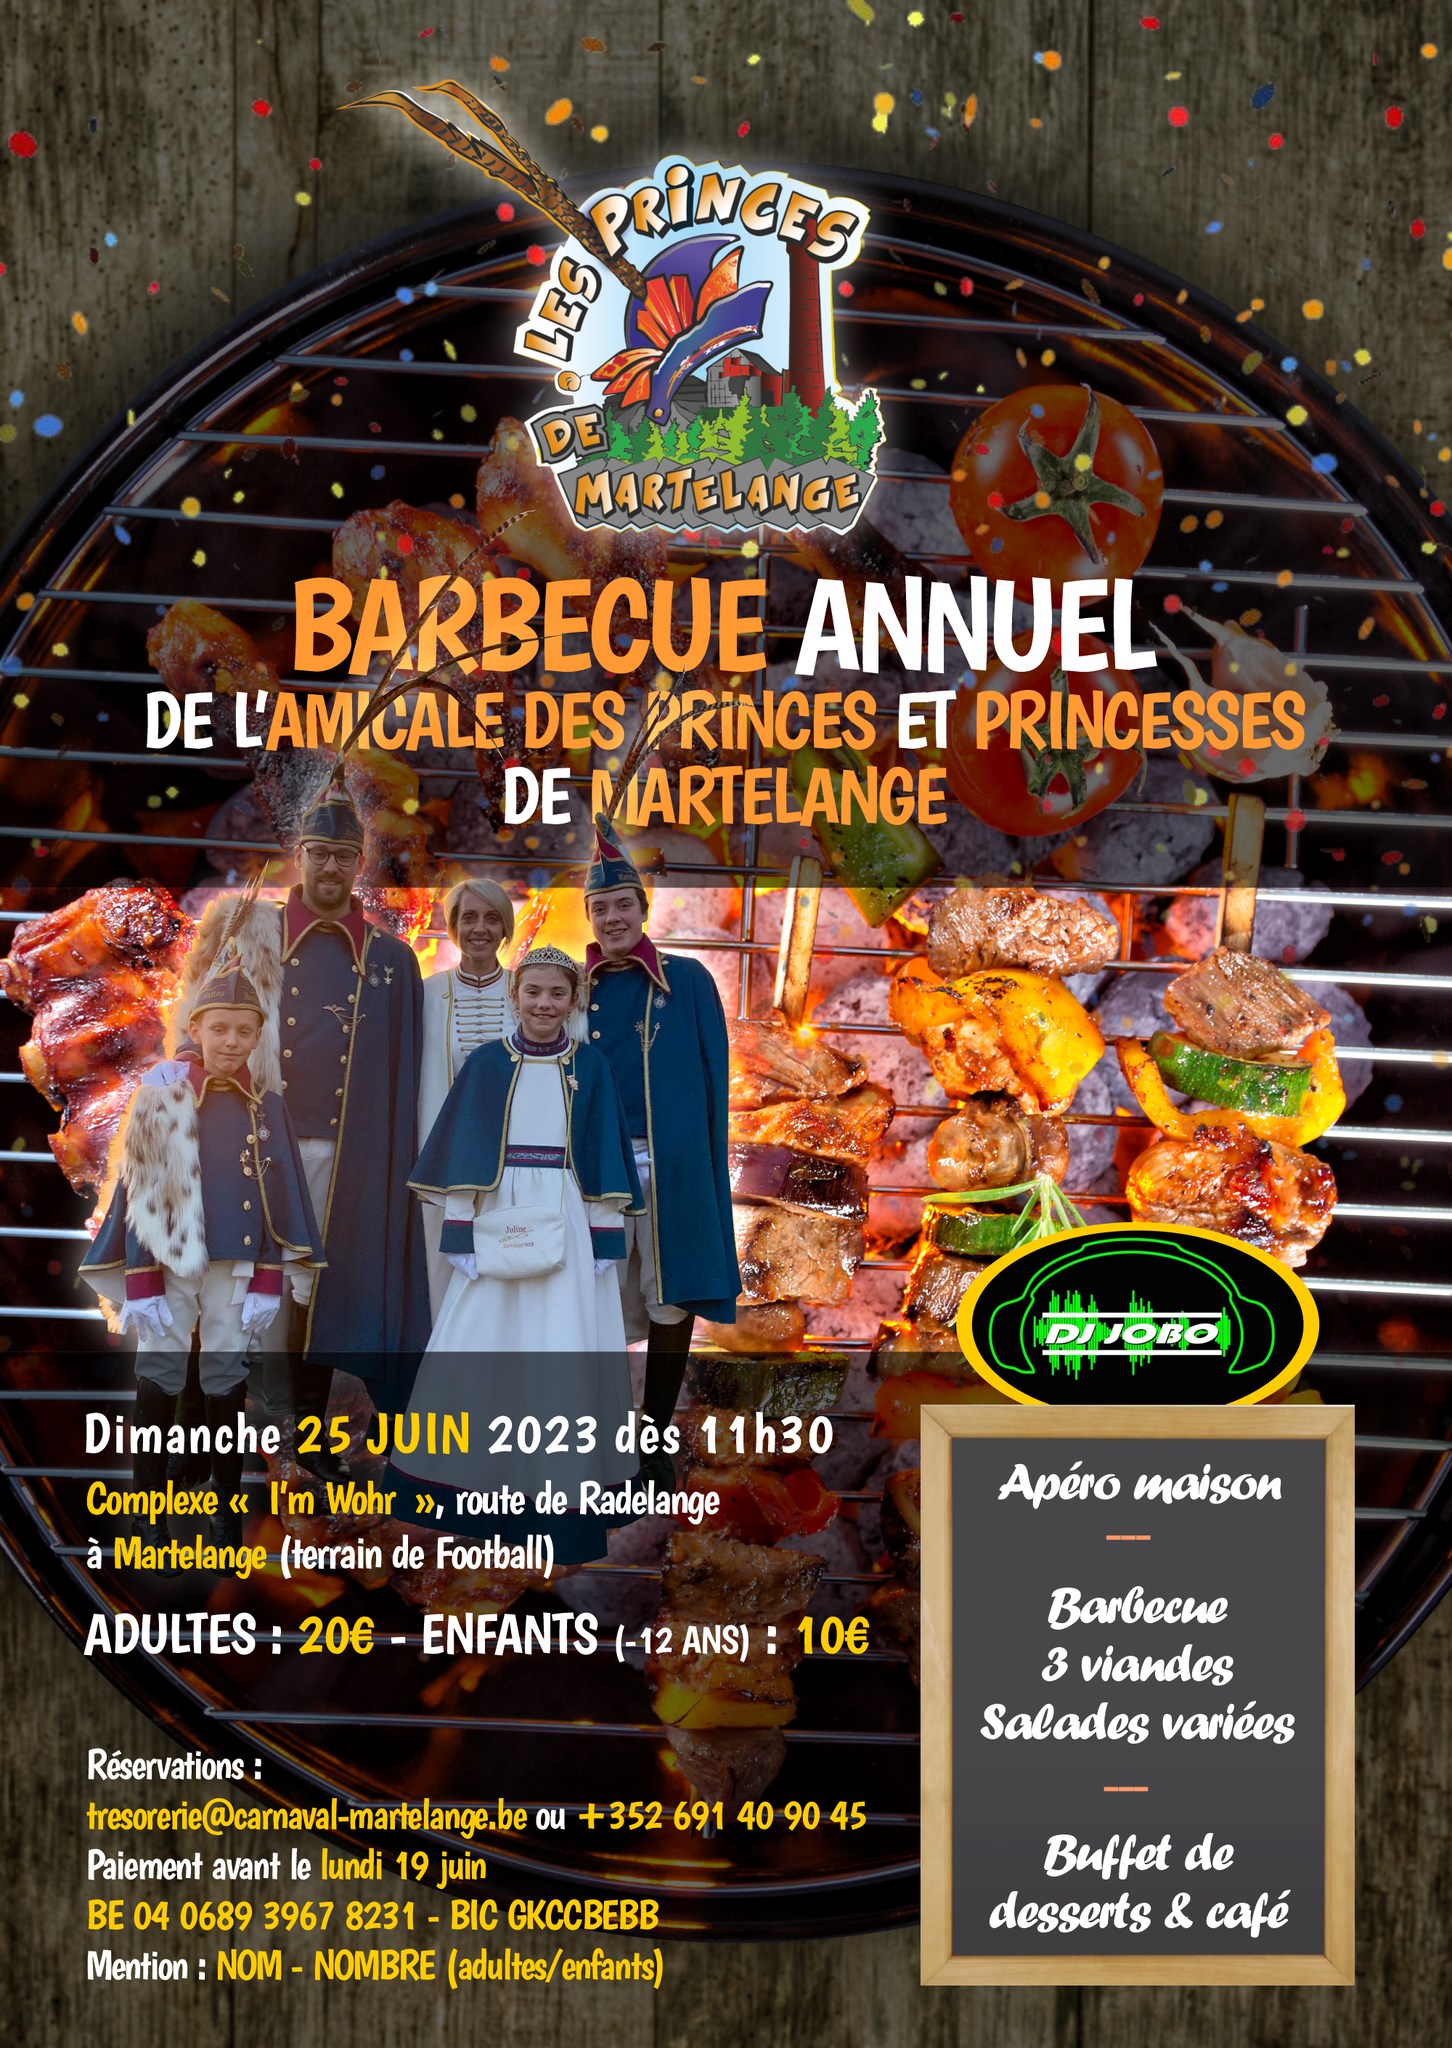 Carnaval de Martelange - Barbecue annuel de l'Amicale des Princes et Princesses